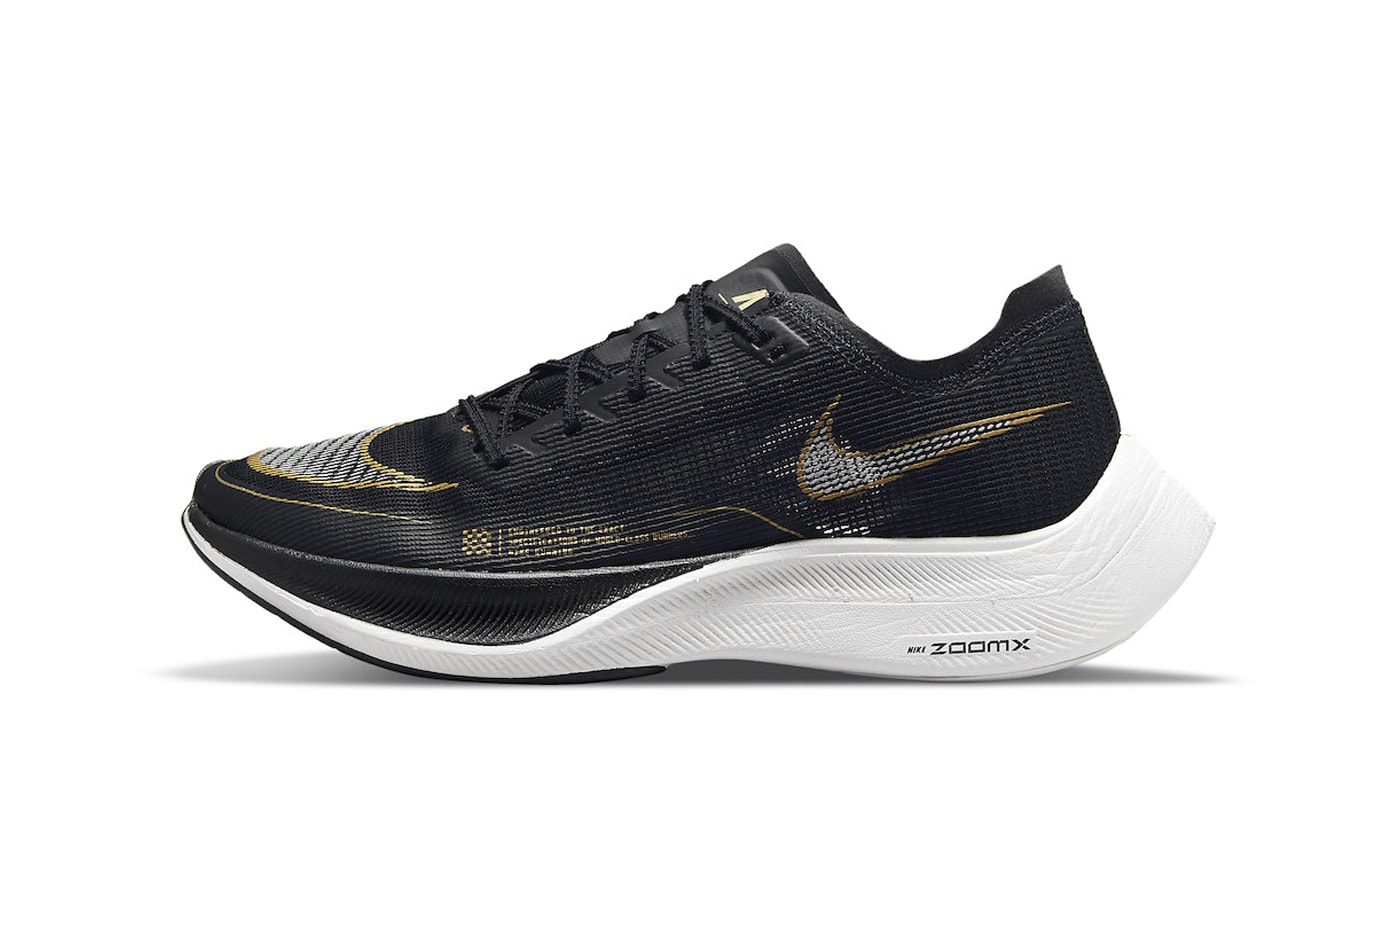 Nike Zoom VaporFly NEXT% in "Black Gold" Release Date sneaker footwear swoosh mesh black gold CU4111-001